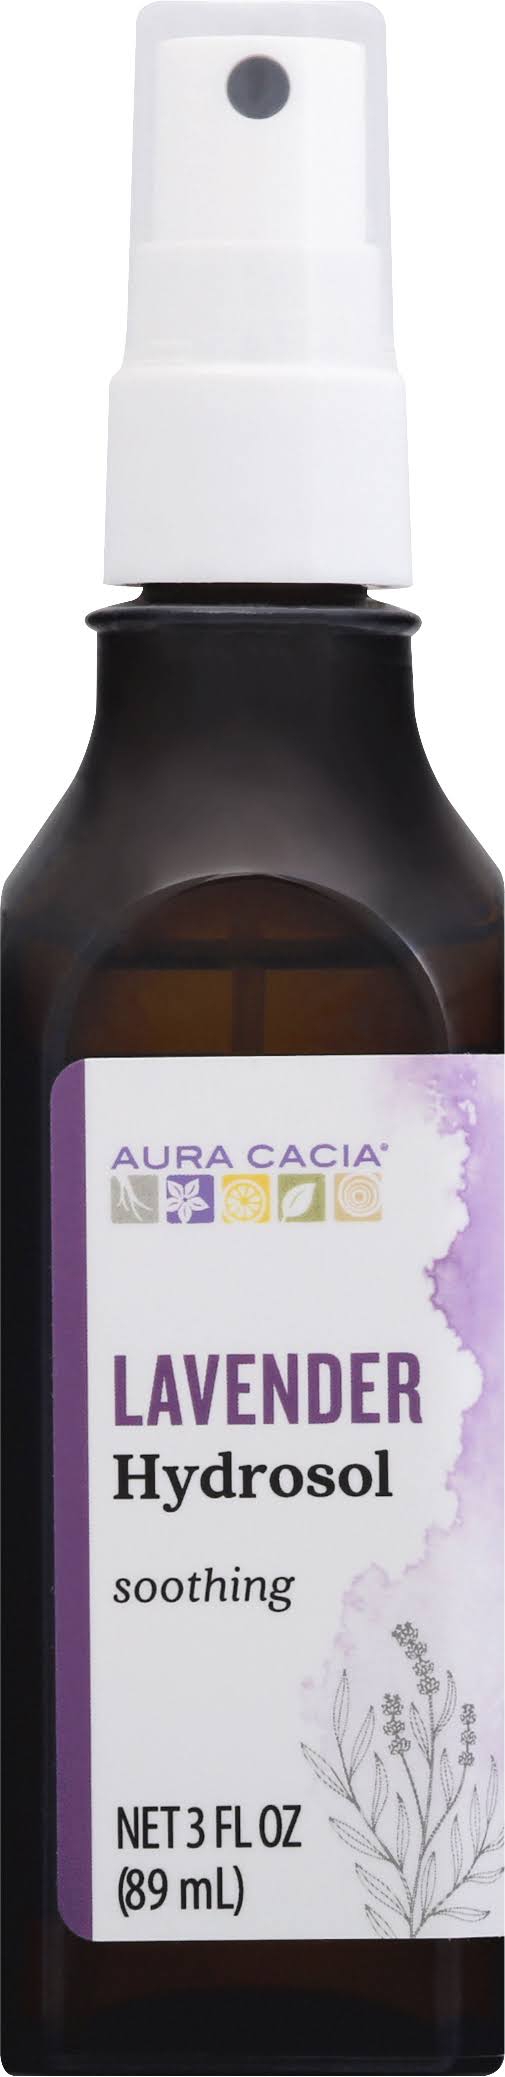 Aura Cacia Hydrosol, Soothing, Lavender - 3 fl oz